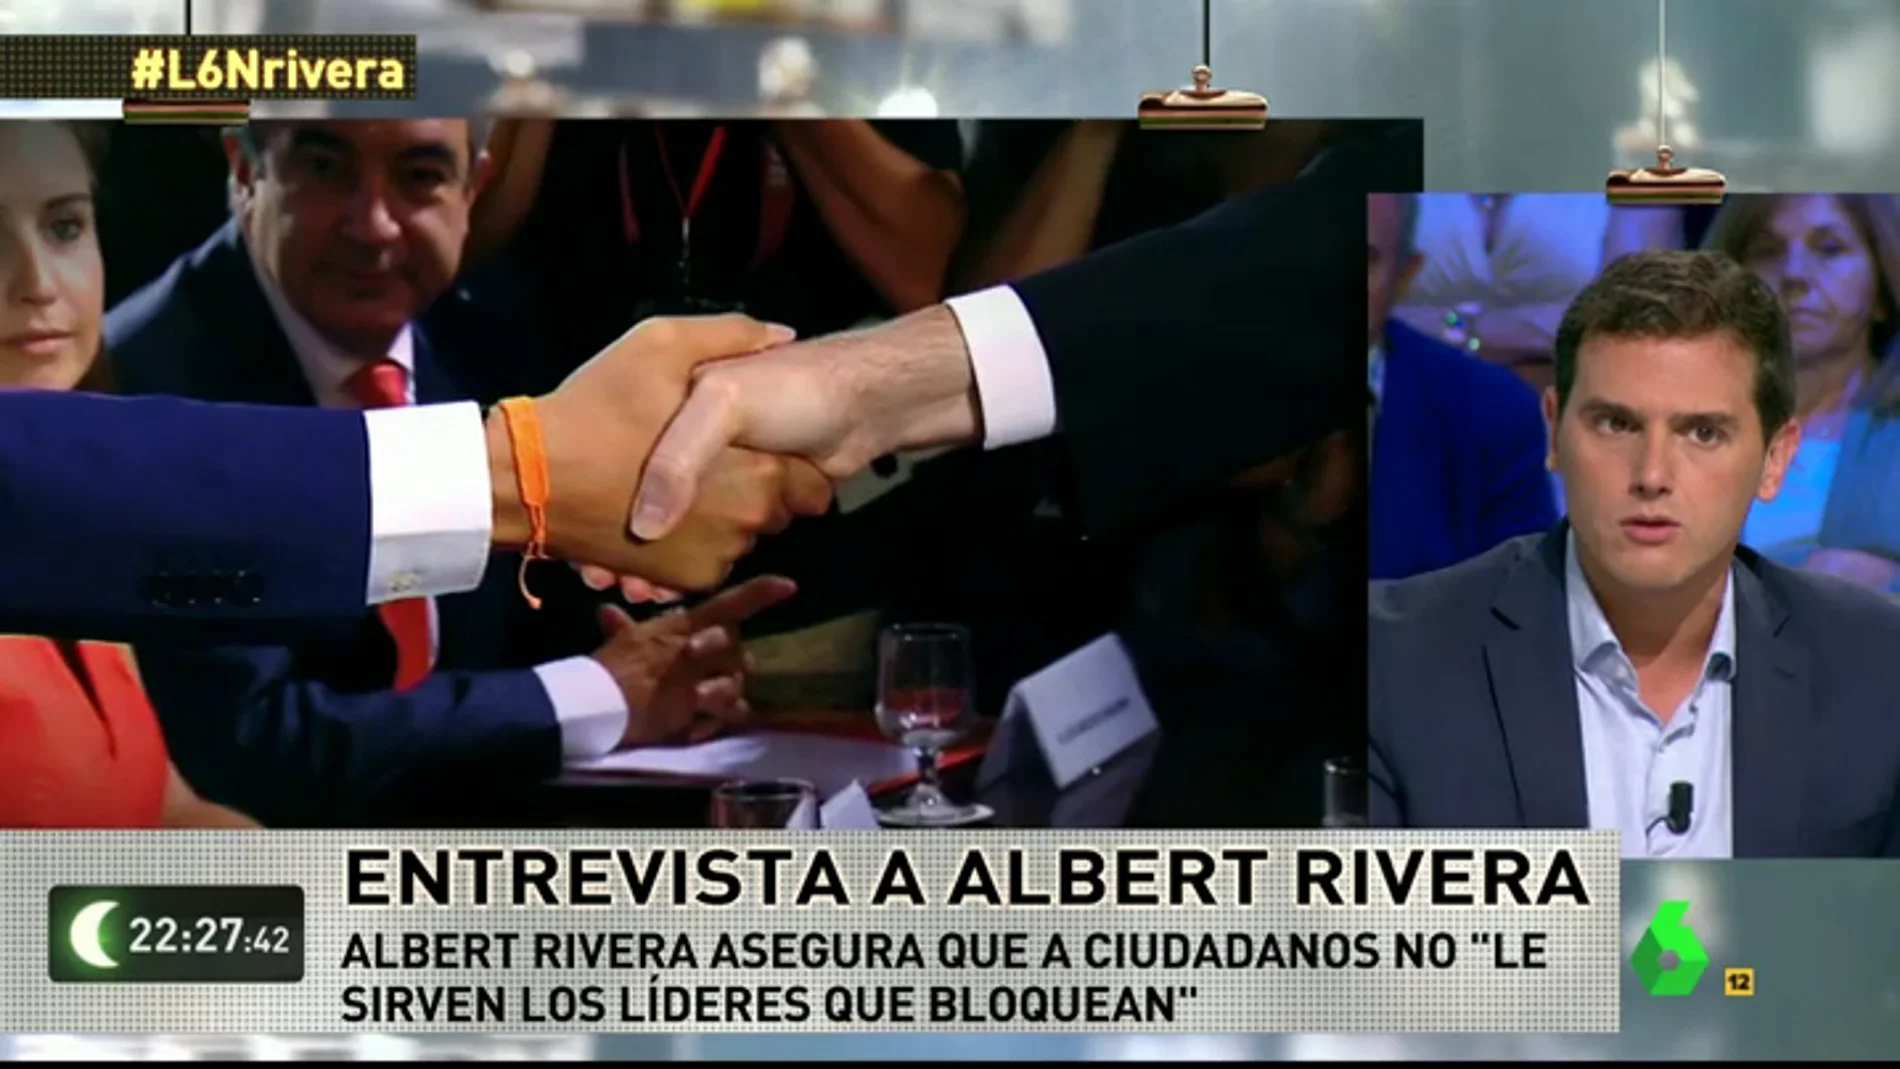 Frame 72.033331 de: Albert Rivera: "En Ciudadanos somos el partido del 'sí', otros como Podemos están siempre en el 'no'"